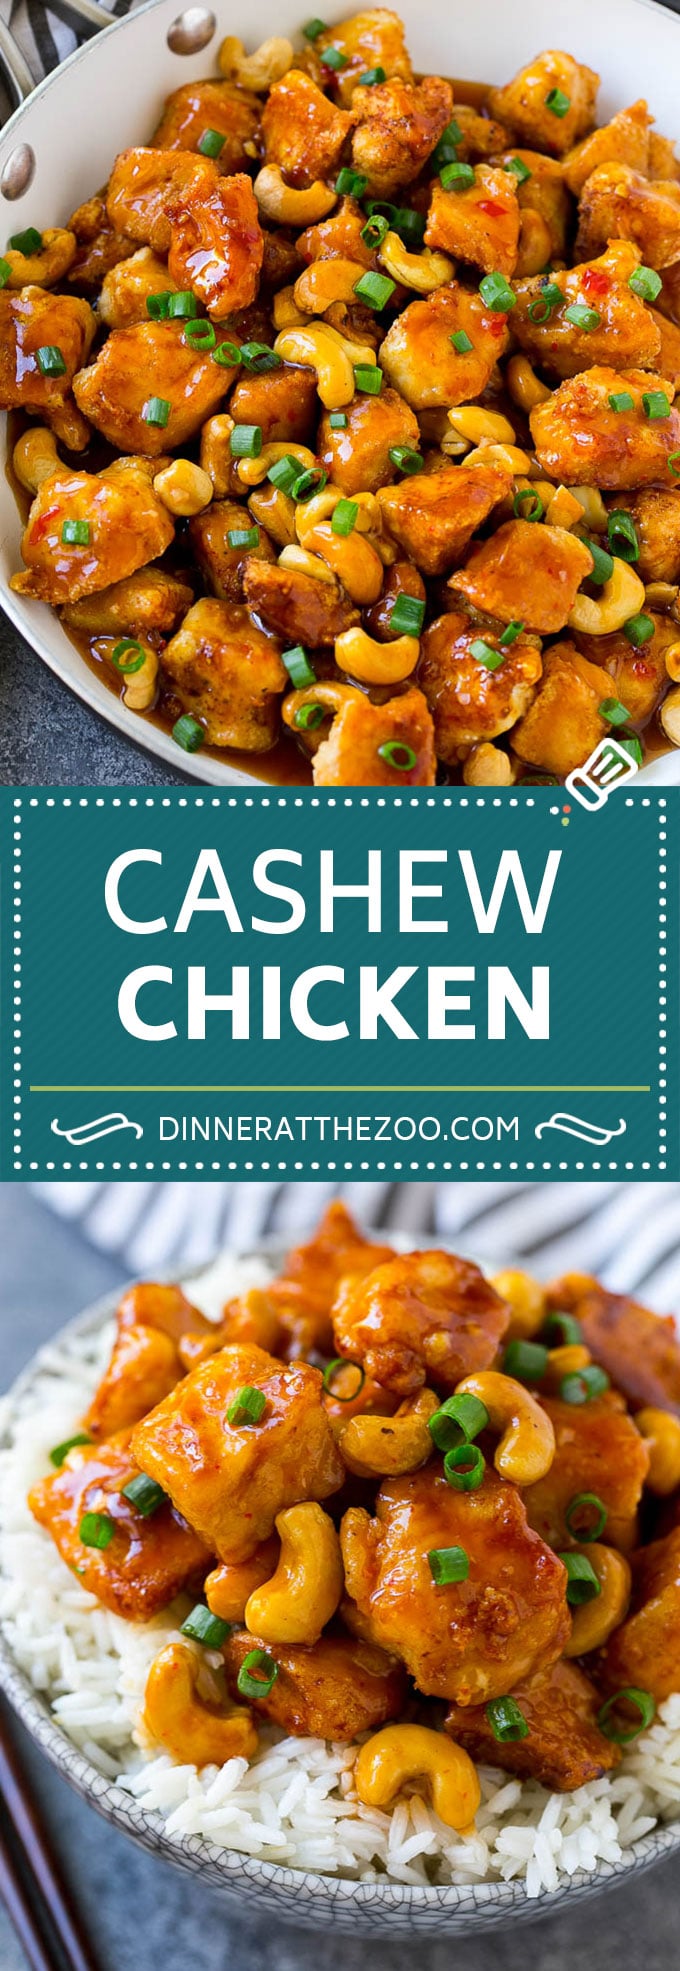 Cashew Chicken Recipe | Cashew Chicken Stir Fry | Chicken Recipe #cashews #chicken #dinner #dinneratthezoo